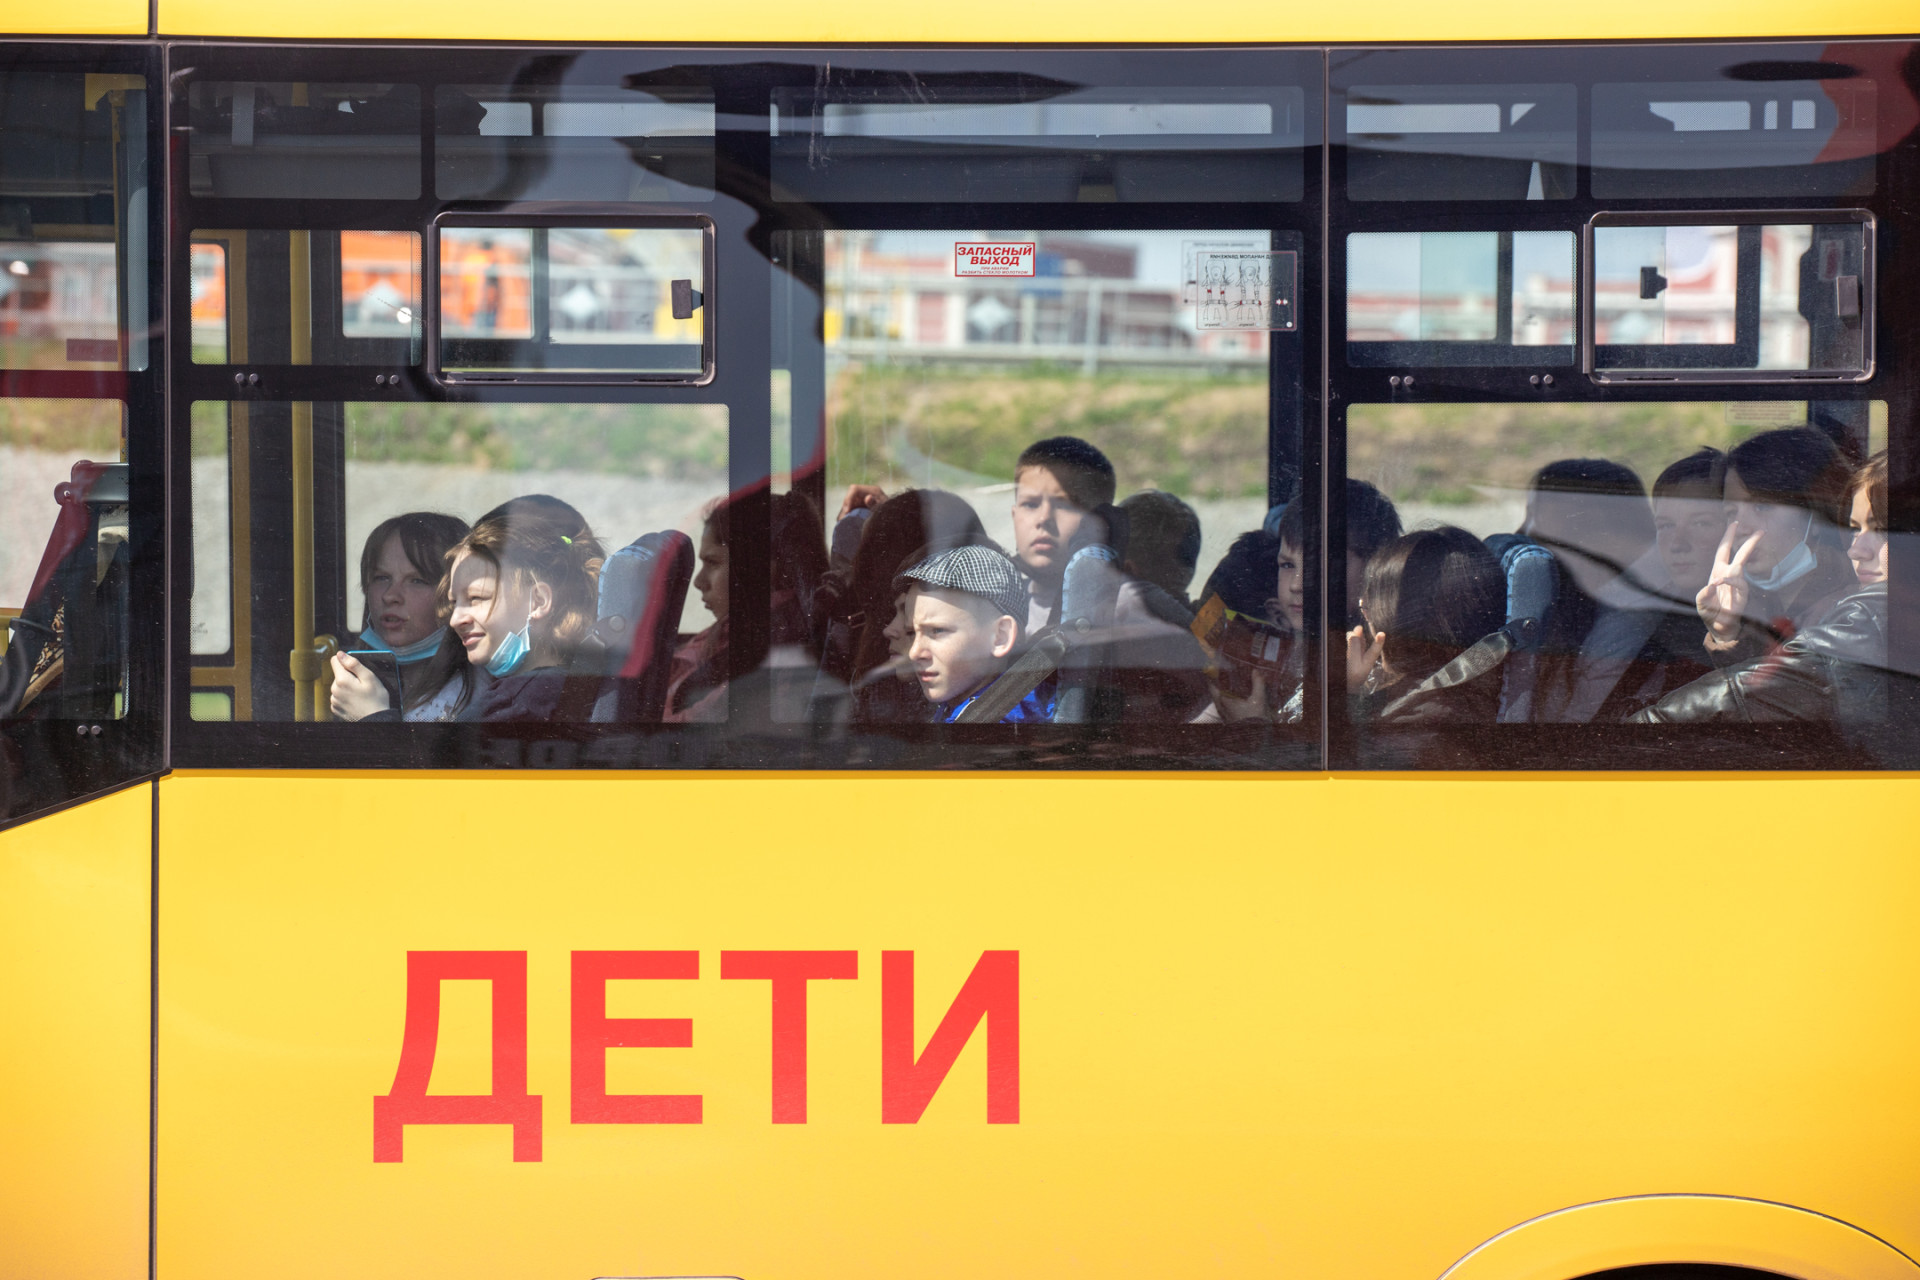 В Тульскую область направят 50 новых школьных автобусов в этом году